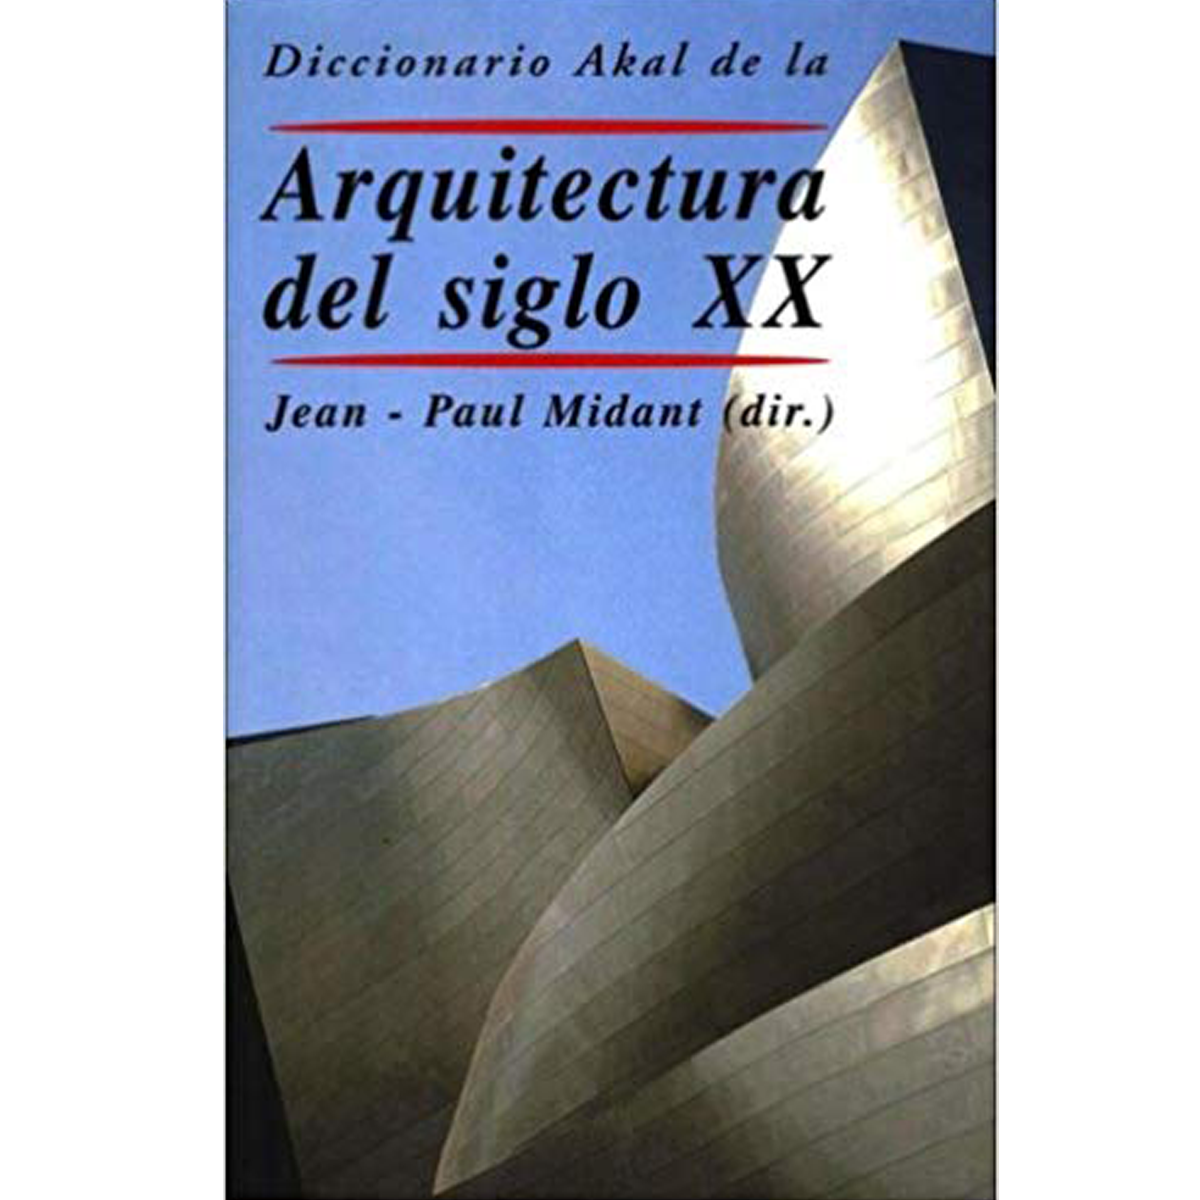 Diccionario Akal de la Arquitectura del siglo XX